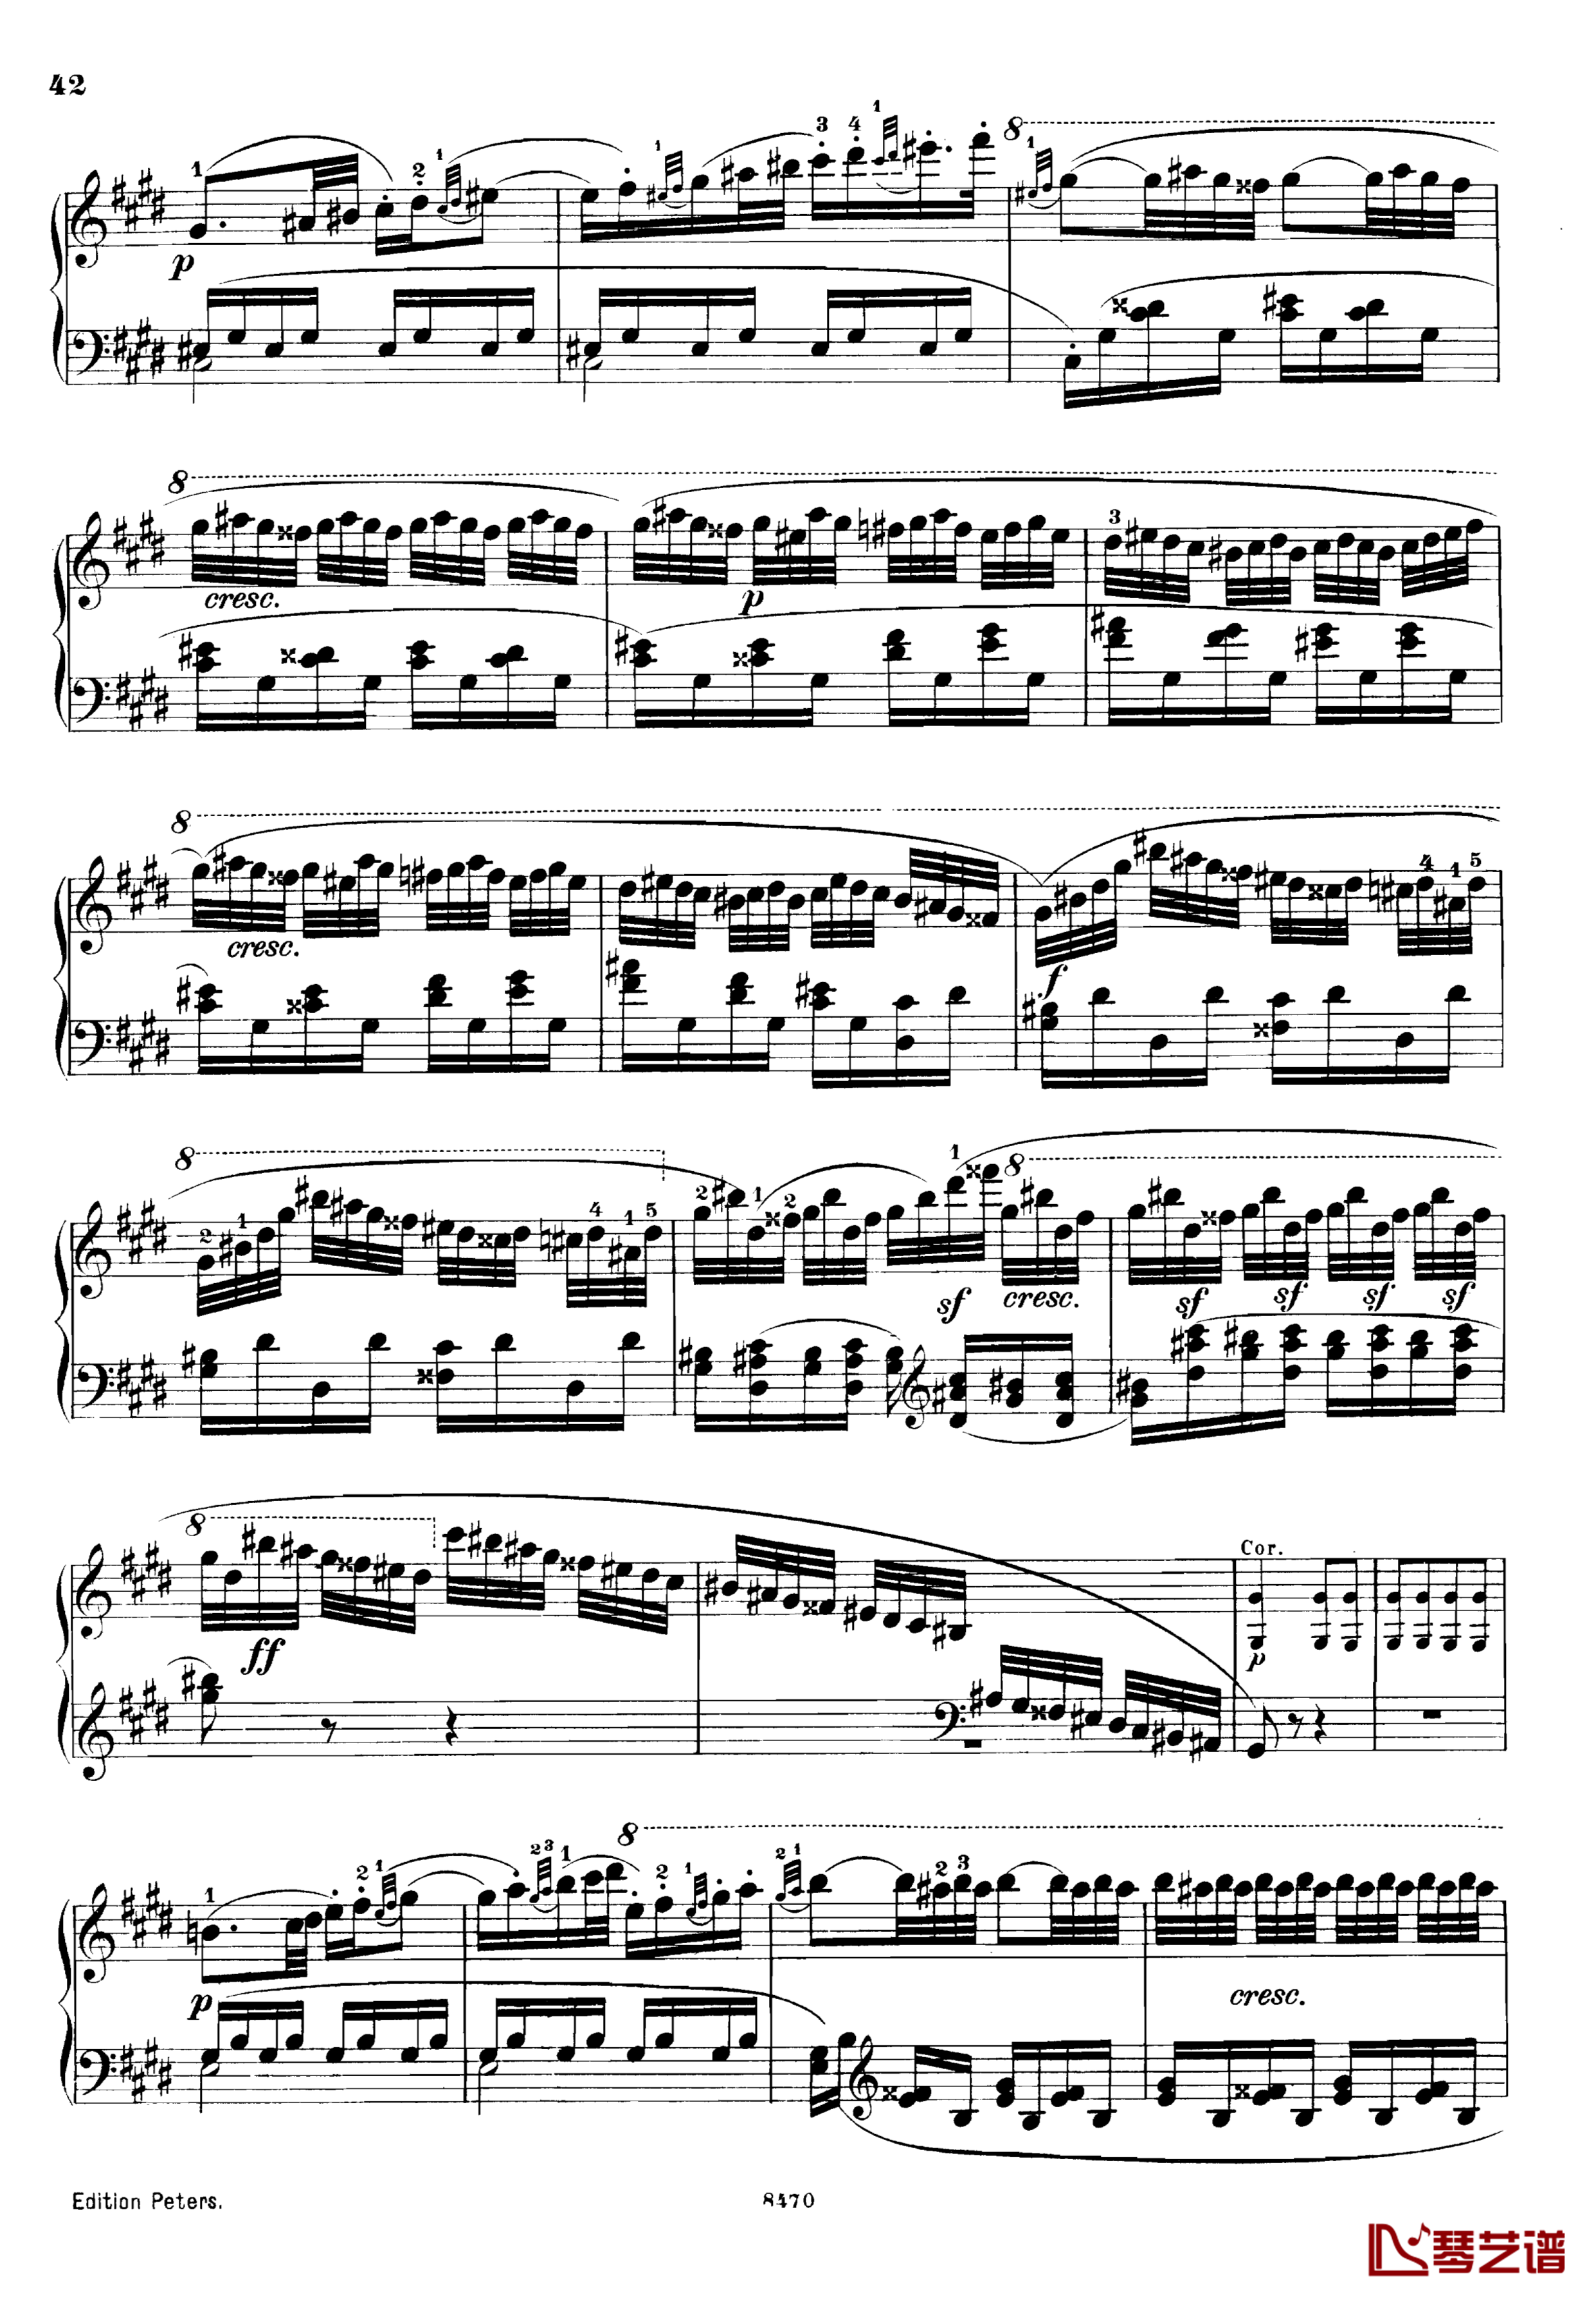 升c小调第三钢琴协奏曲Op.55钢琴谱-克里斯蒂安-里斯42